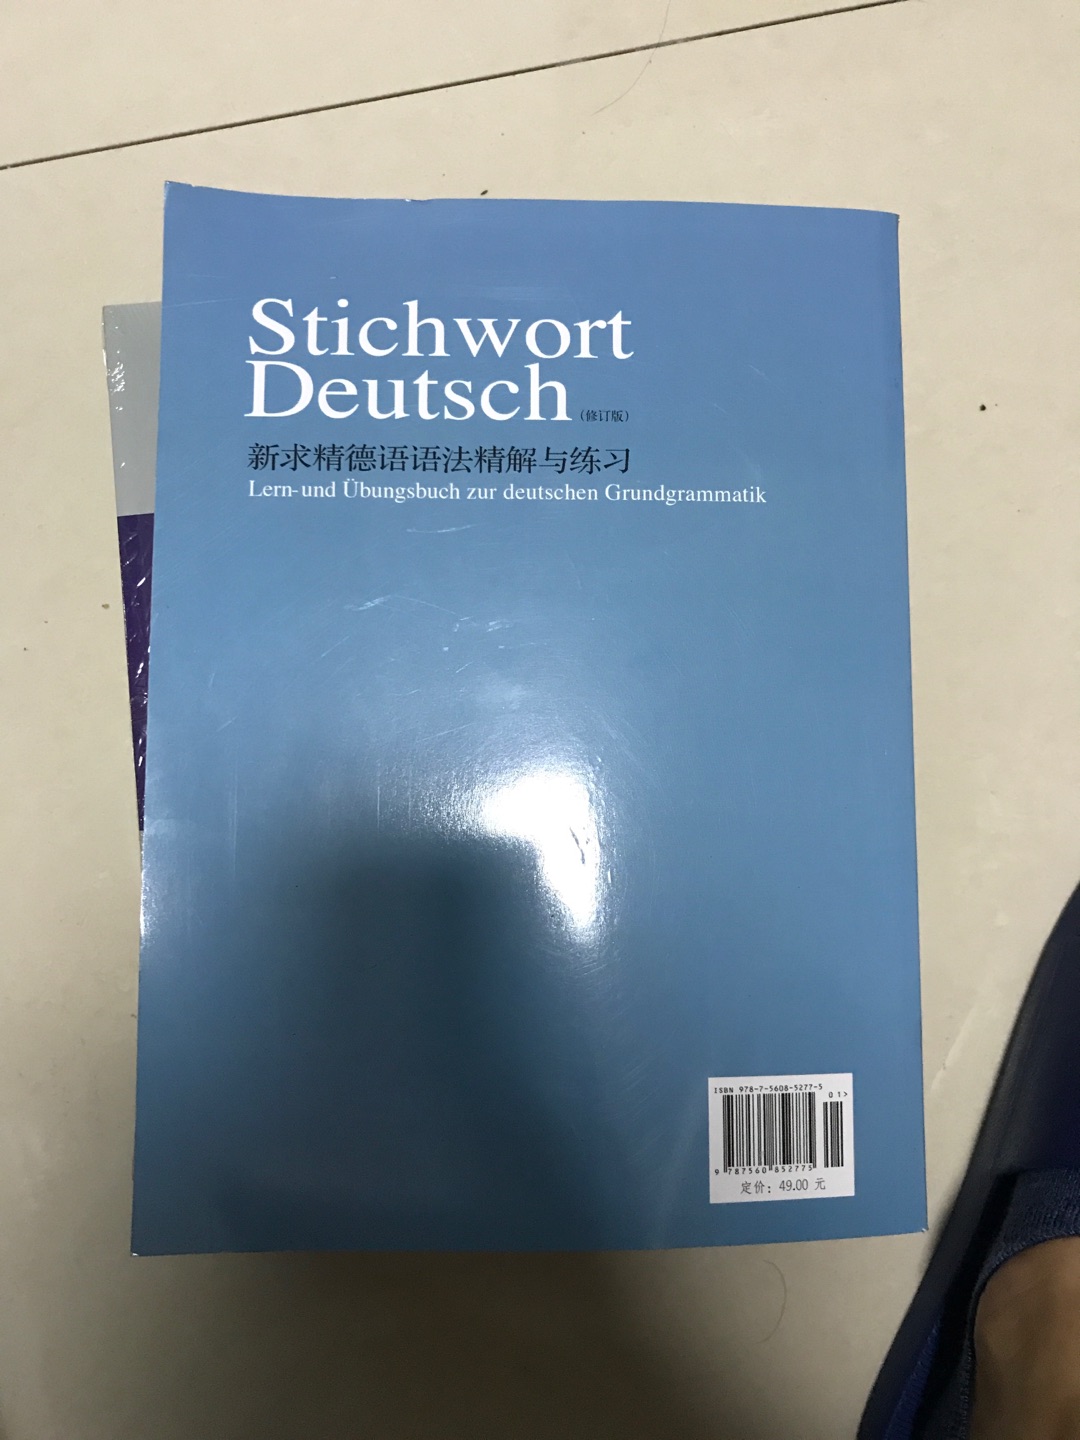 这本书语法很不错，详细易懂。慢慢学习，学好德语。知识就是金钱啊！